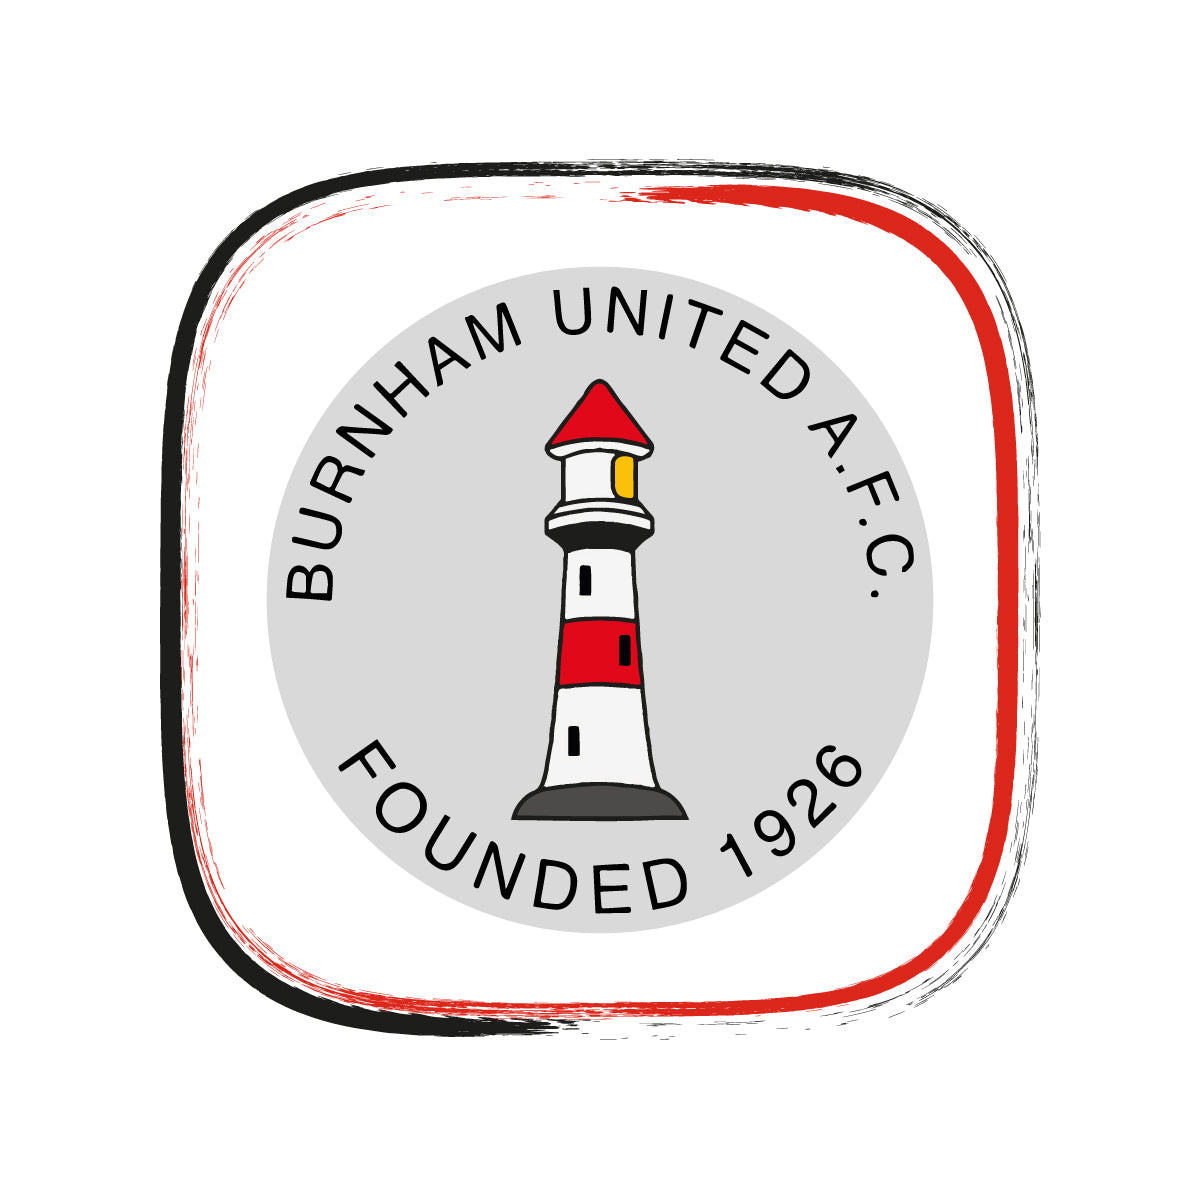 Burnham United F.C